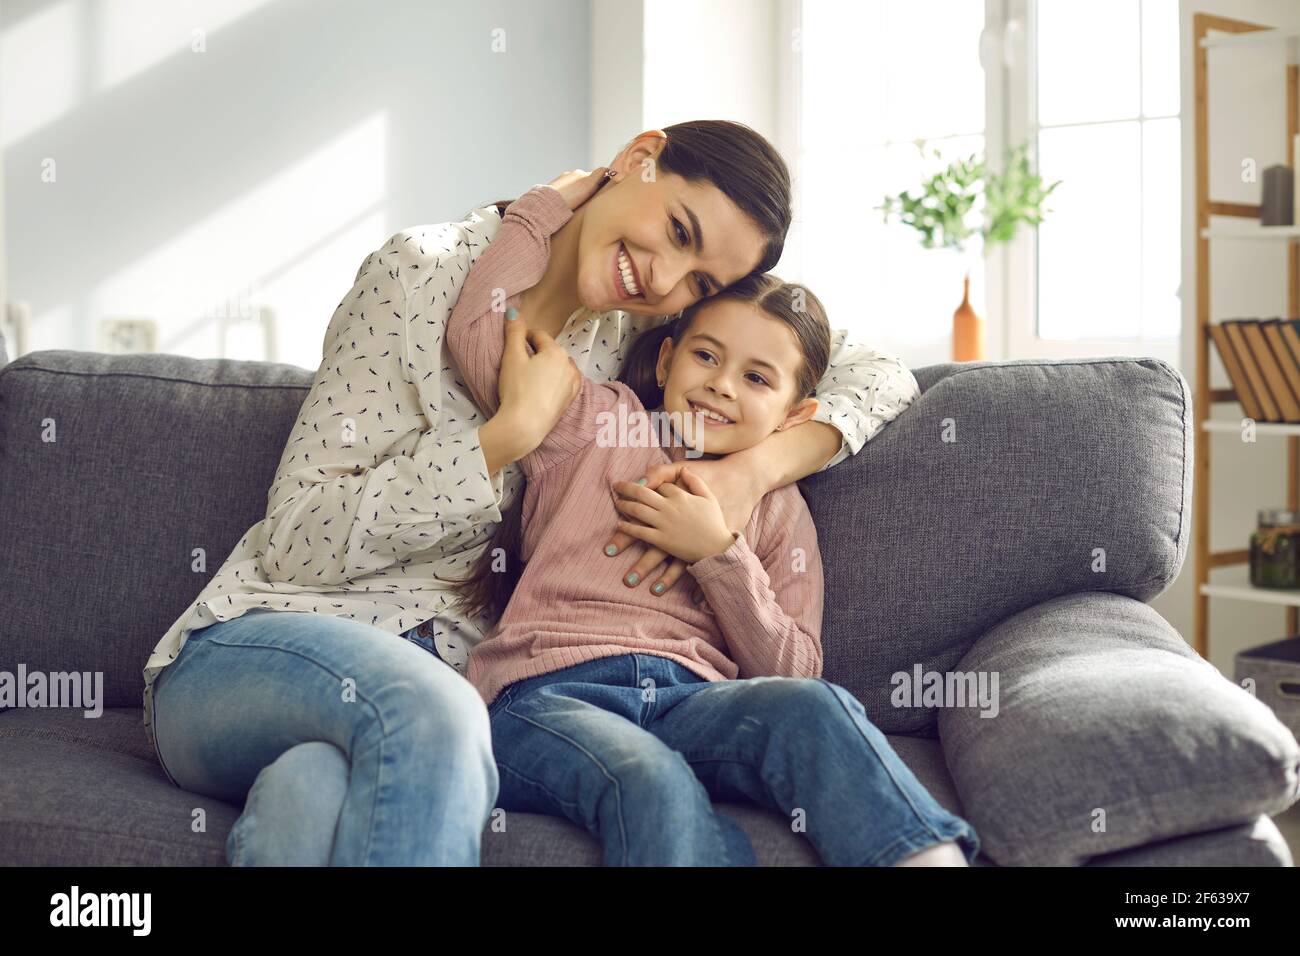 Ritratto di felice sorridente giovane madre abbraccio coccolare con la figlia seduto sul divano Foto Stock